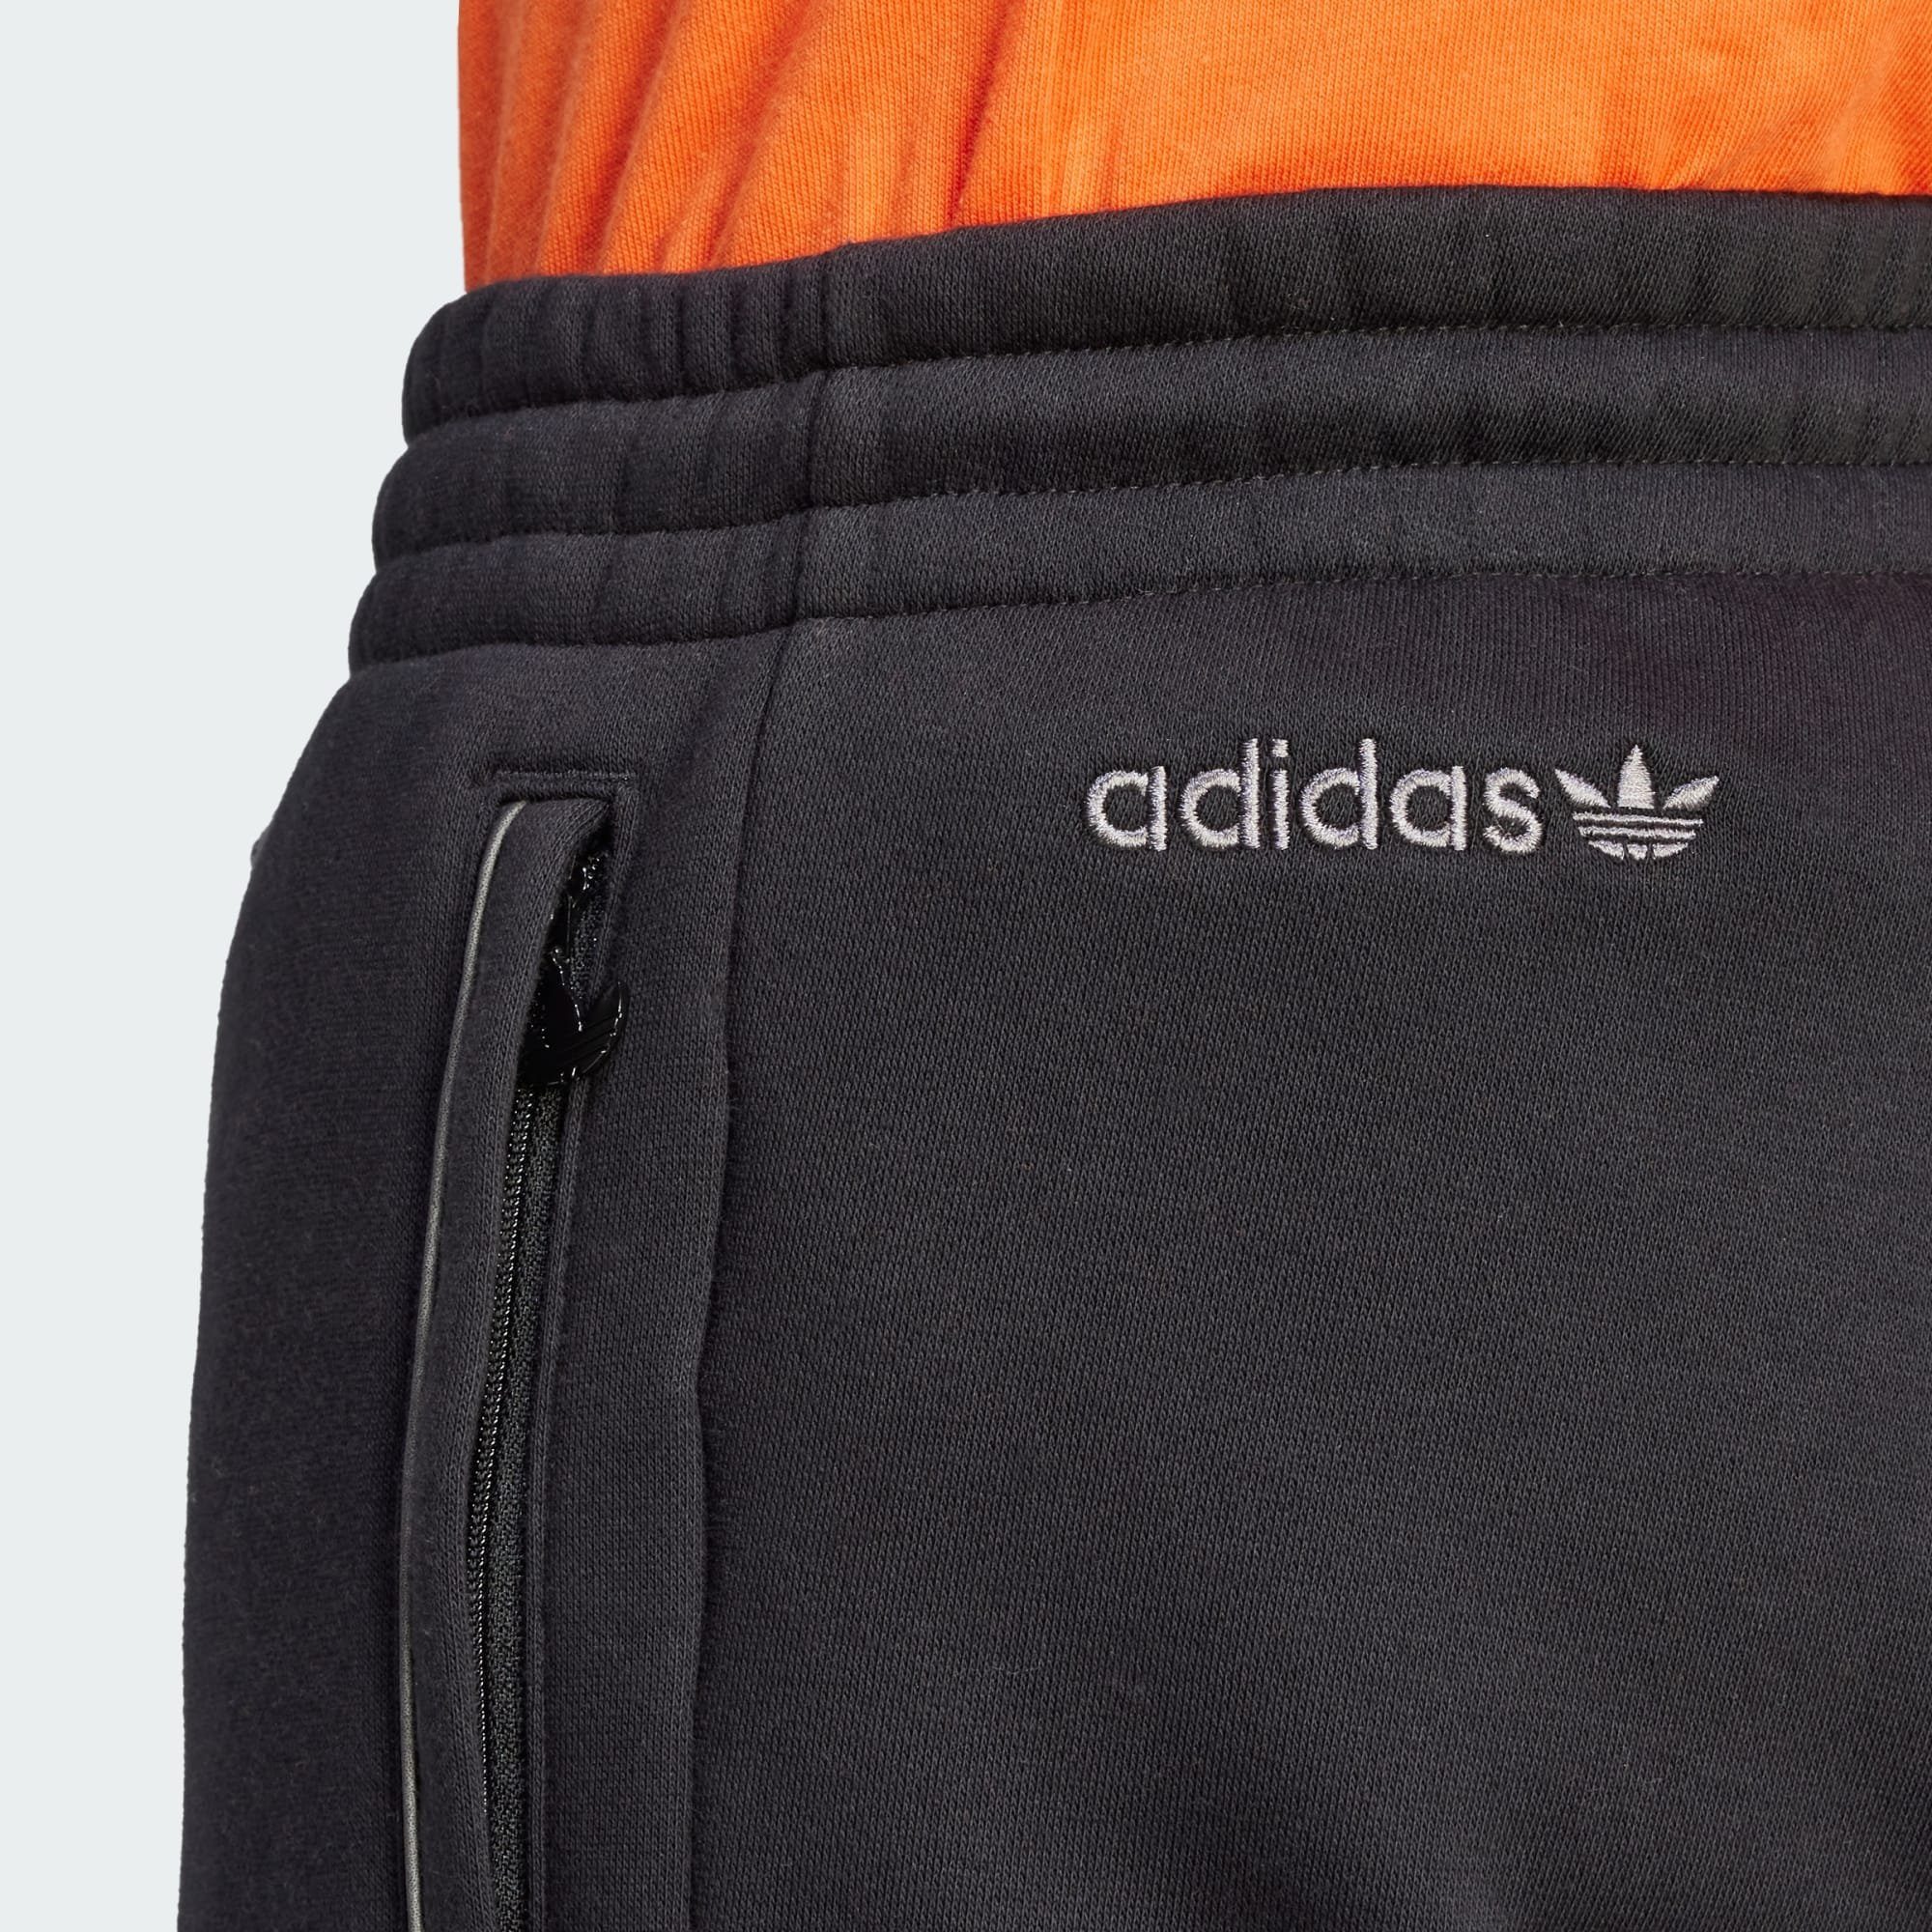 adidas Jogginghose SEASONAL REFLECTIVE Black ADICOLOR JOGGINGHOSE Originals